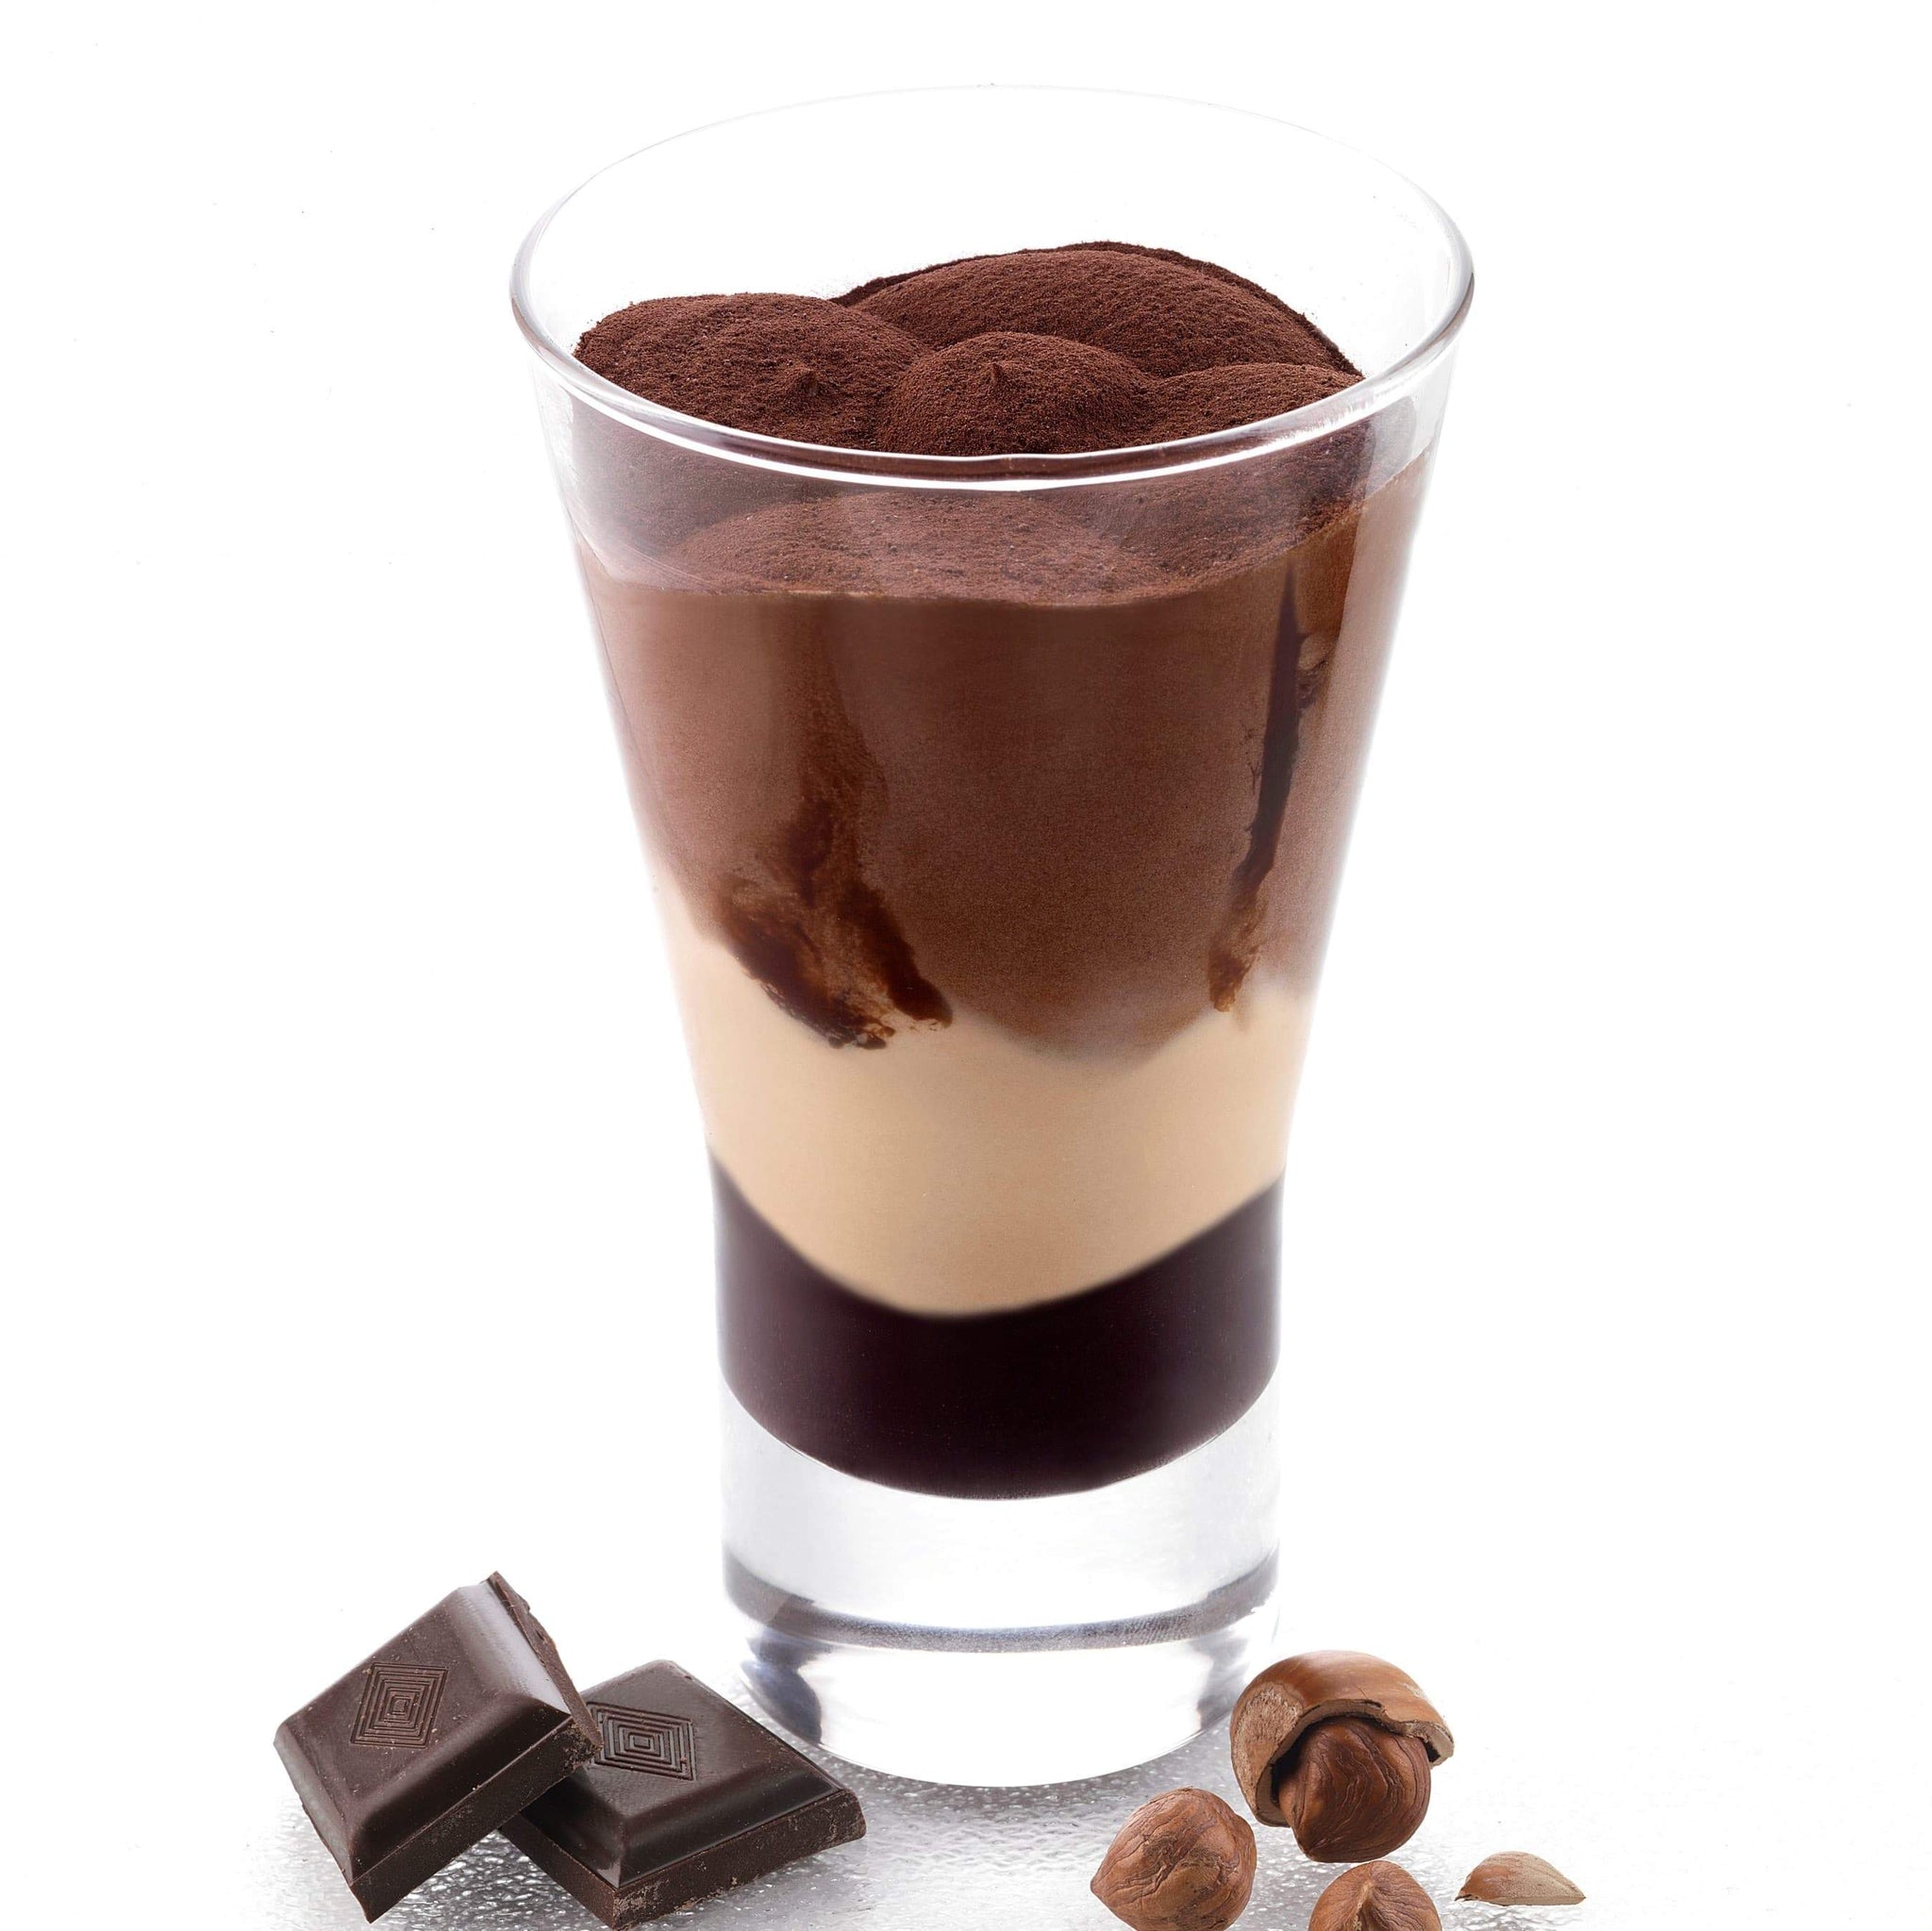  Coppa Gelato Cioccolato e Nocciola Bindi: un'elegante coppa in vetro con gelato alla nocciola e cioccolato con fondo cremoso al cioccolato.